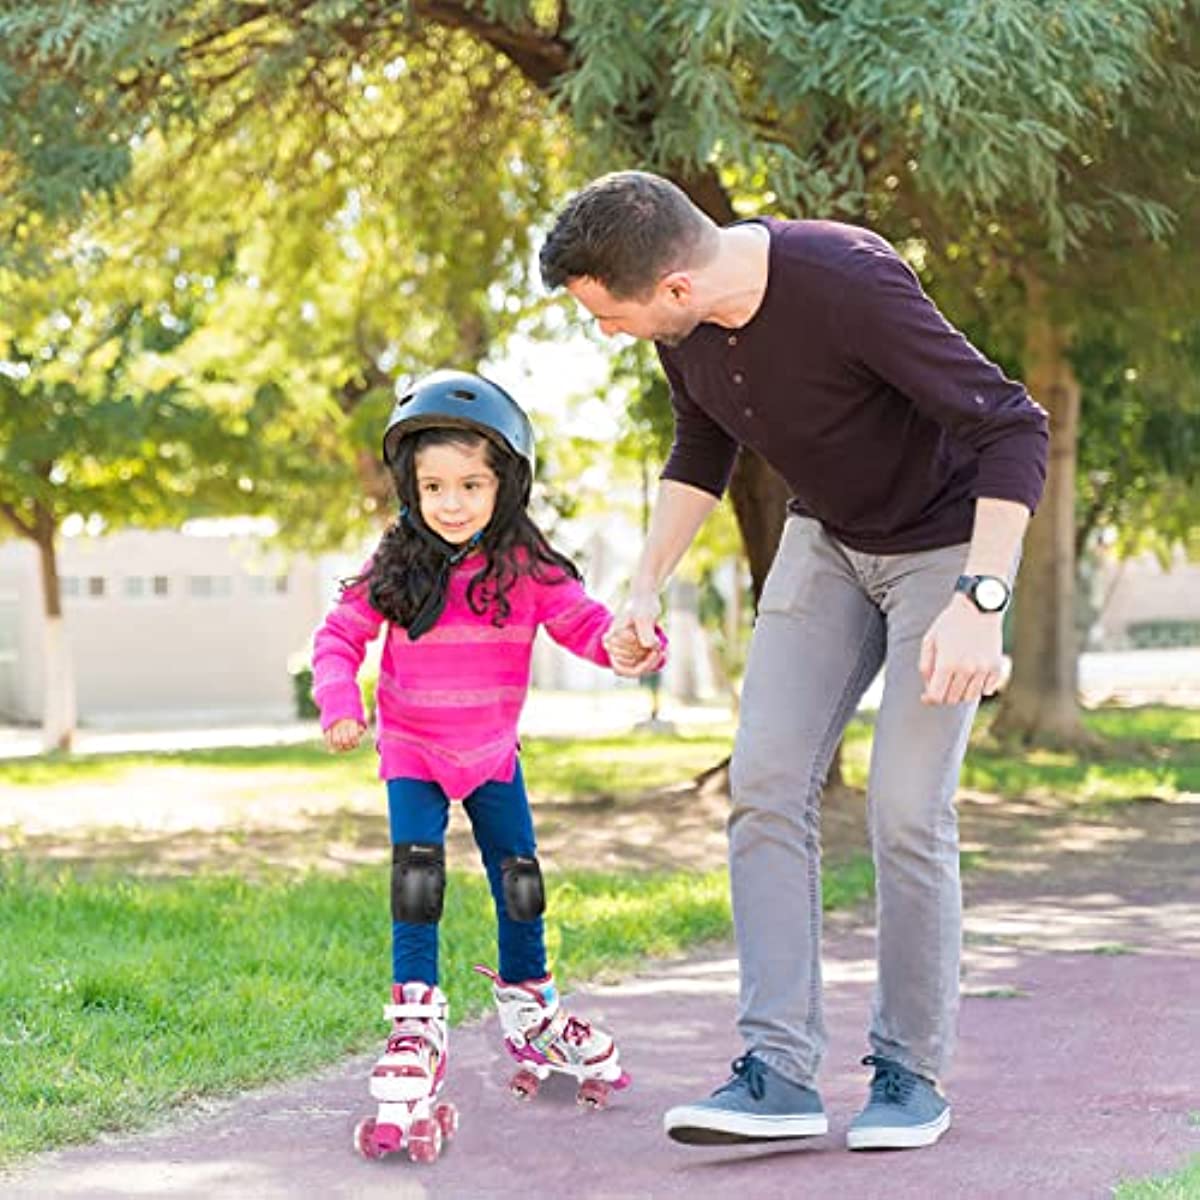 Nattork Adjustable Roller Skates for Kids - Pink